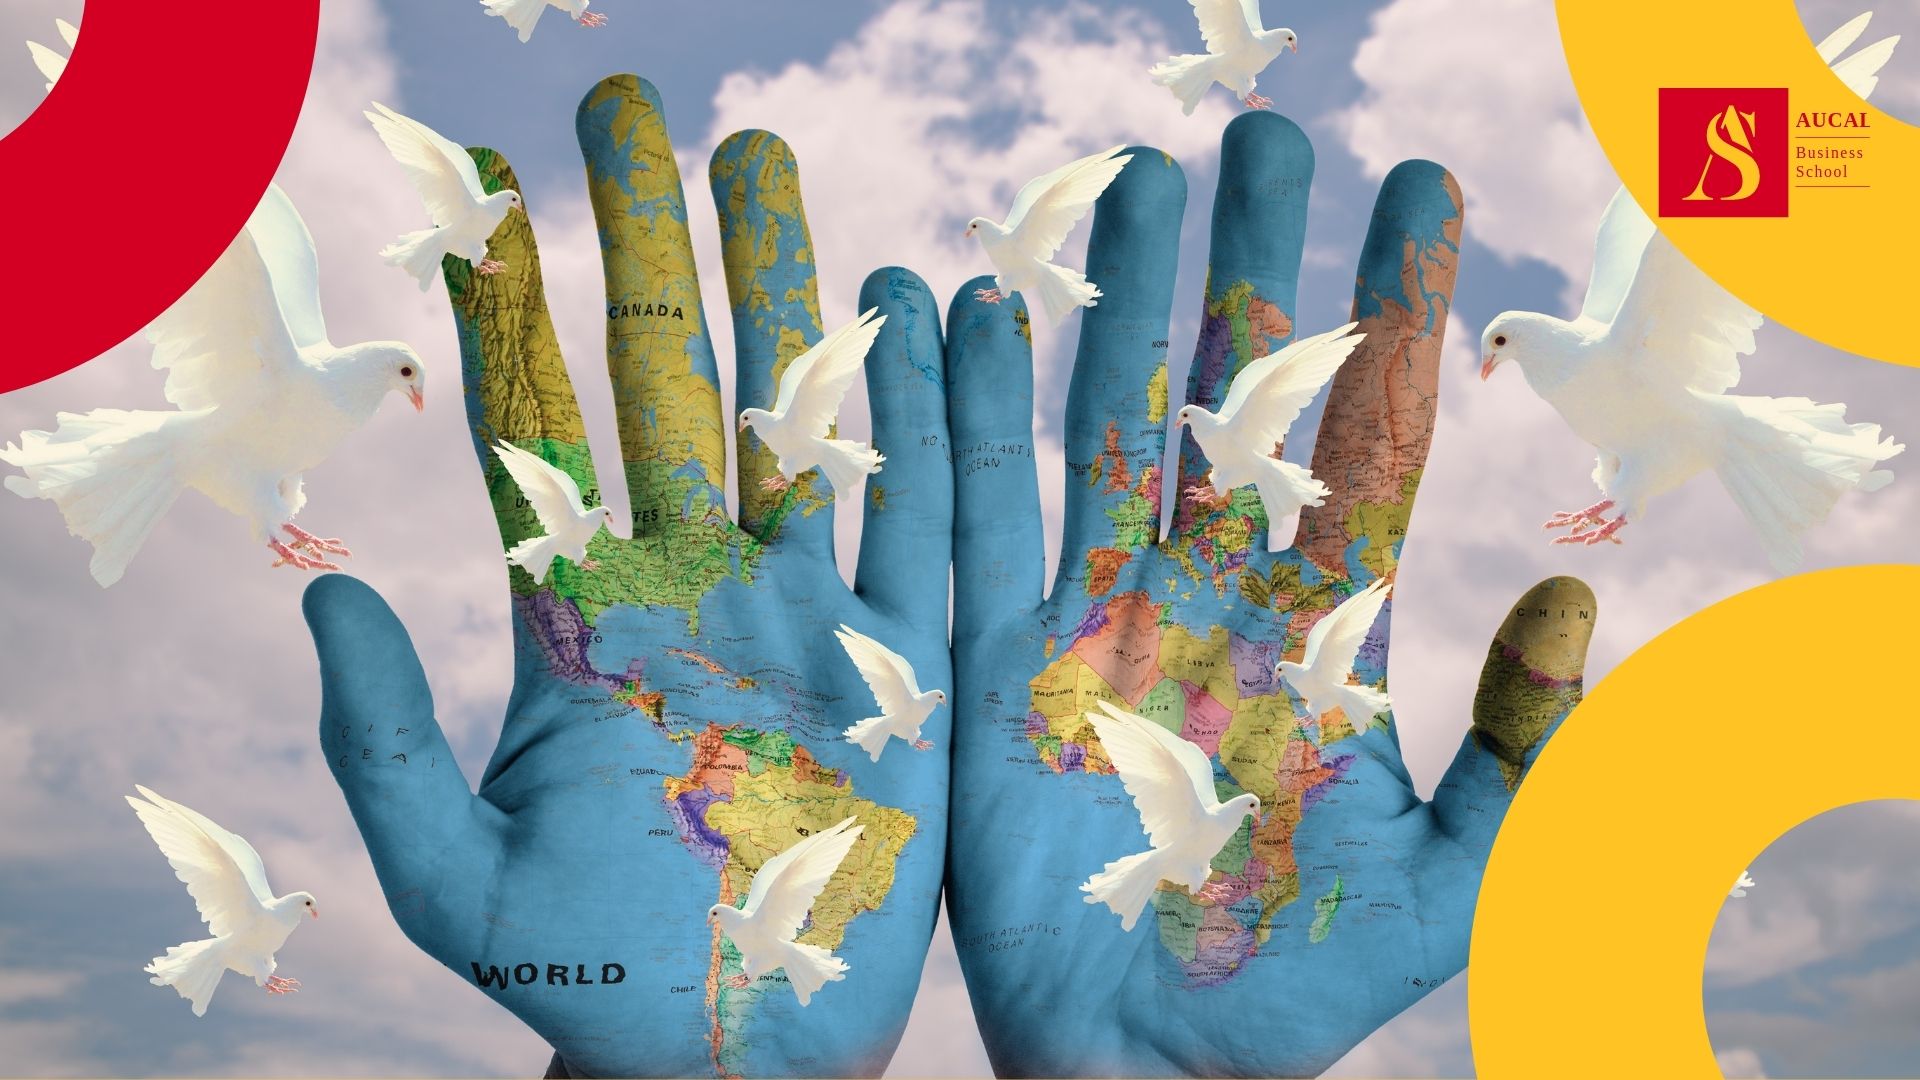 AUCAL Bussines School Blog Social 16avo Objetivo de los ODS: Paz, Justicia e Instituciones sólidas